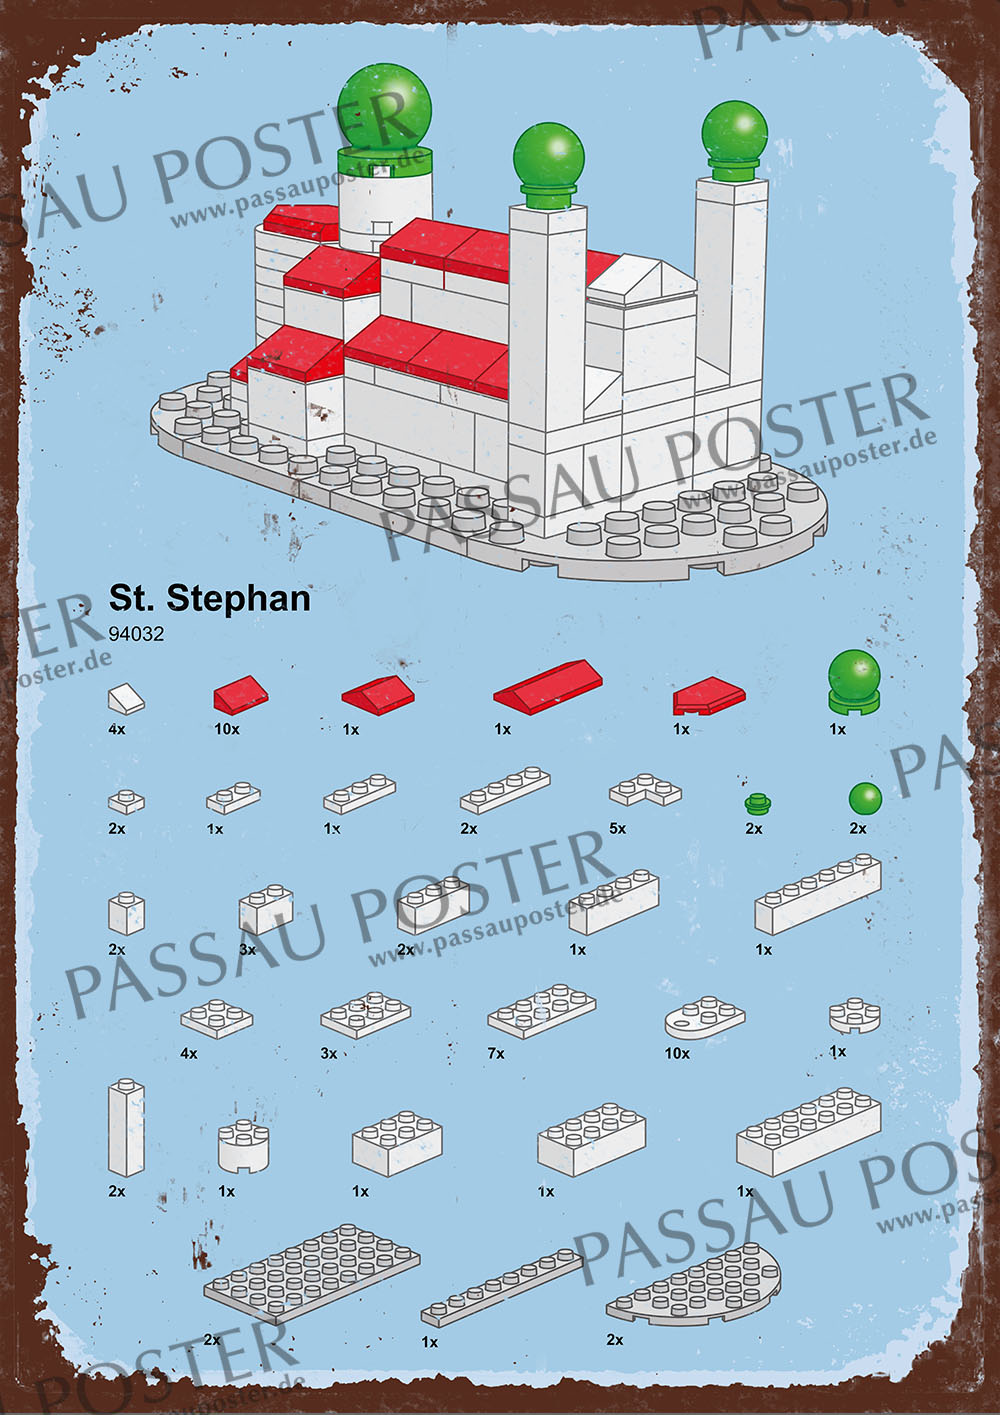 Passau Poster - Passau Stein auf Stein